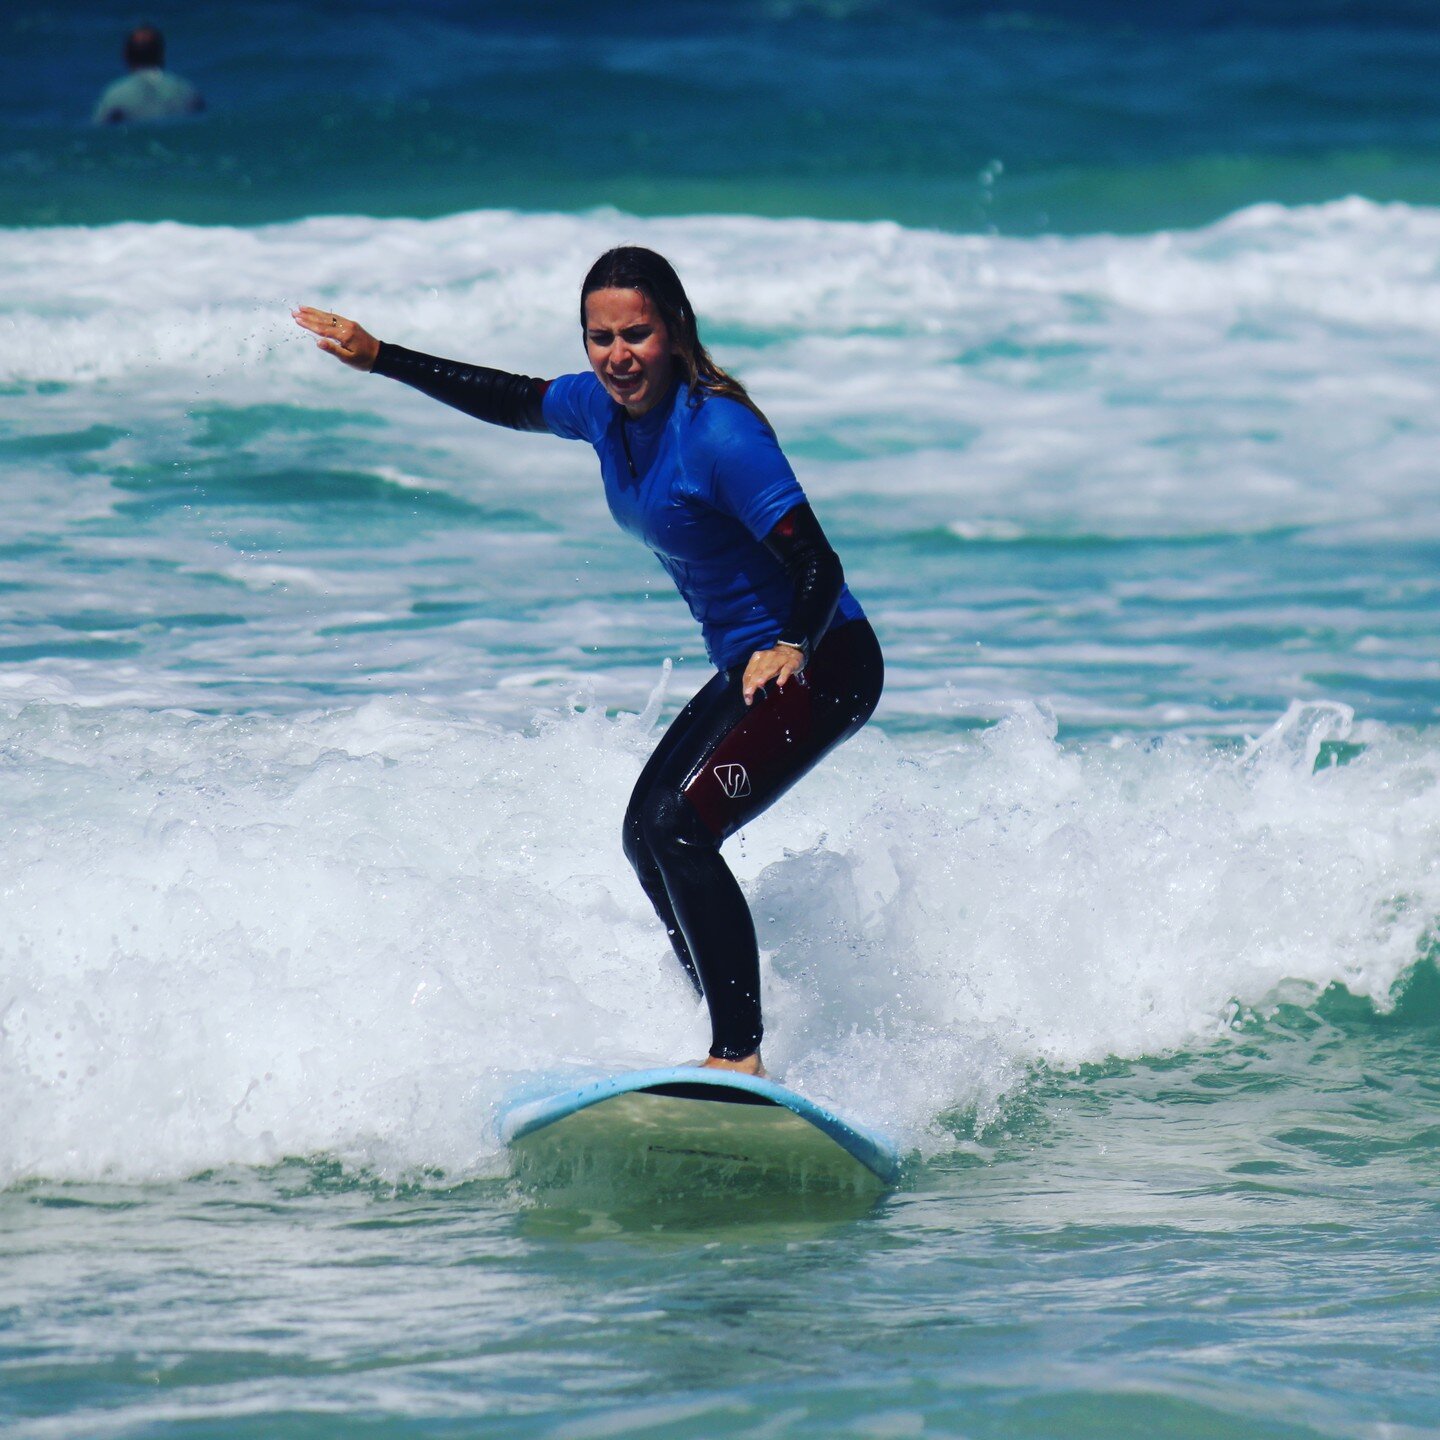 #surfing #beachlife #adventure
surfing #adventure #fun#surfing #oceanlove #catchingwaves #surfing #beachlife#familyfun #oceanlove #fuerteventura #surf#surfcamp#fuerteventurarxperience #surf #beachlife